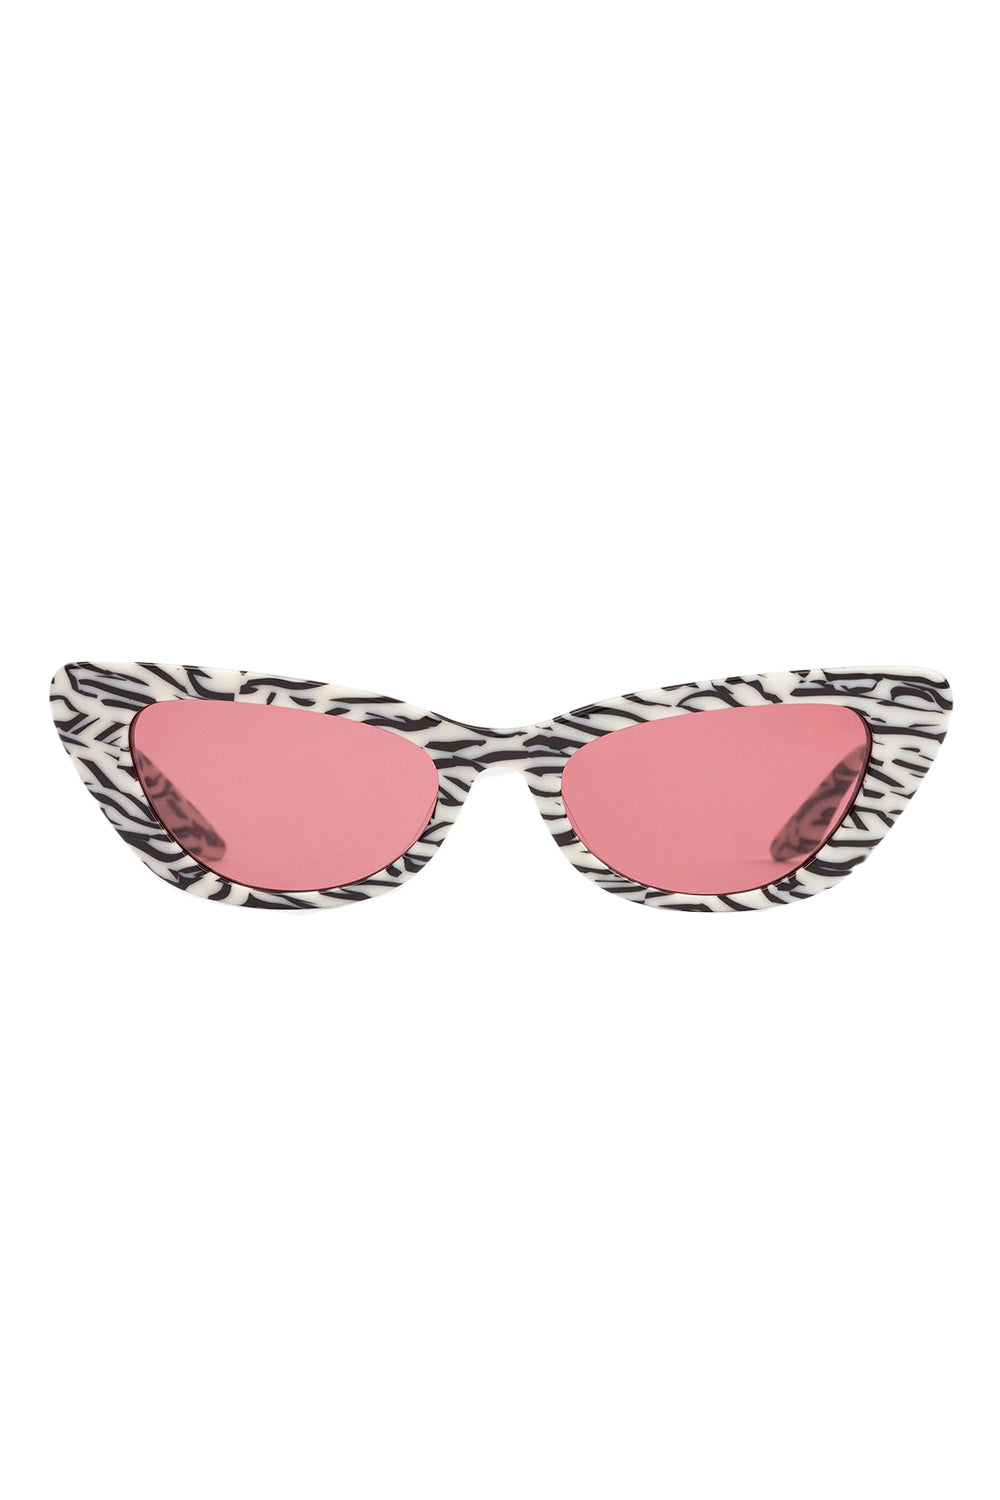 Sito Shades | Sito Lunette Sunglasses